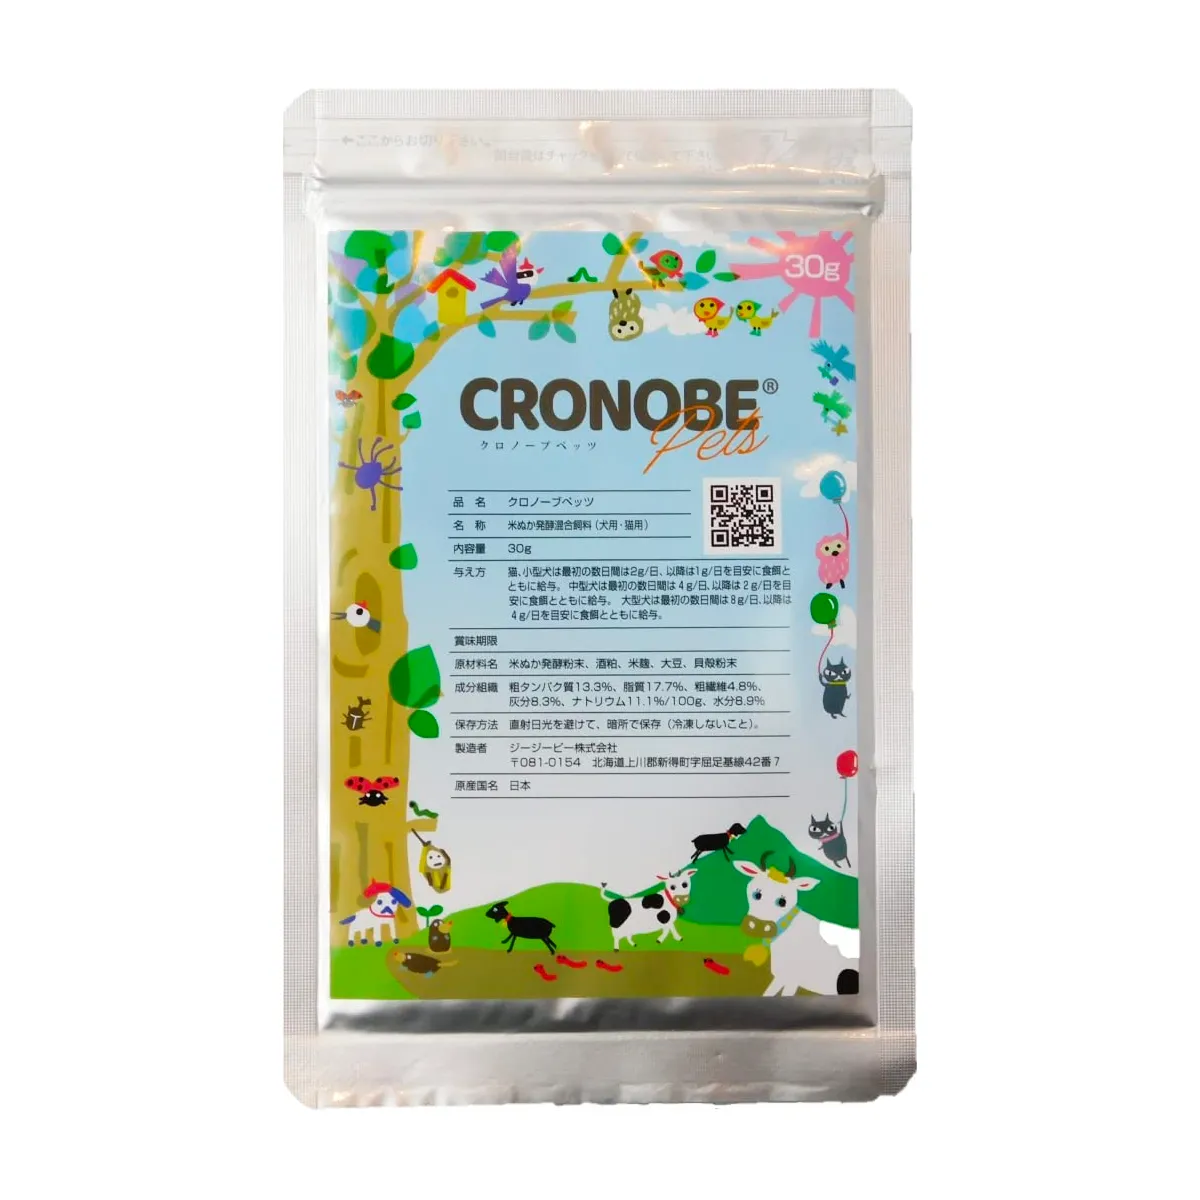 CRONOBE(クロノーブ) 【国産 無添加】腸活 ペット サプリメント(犬 猫用)